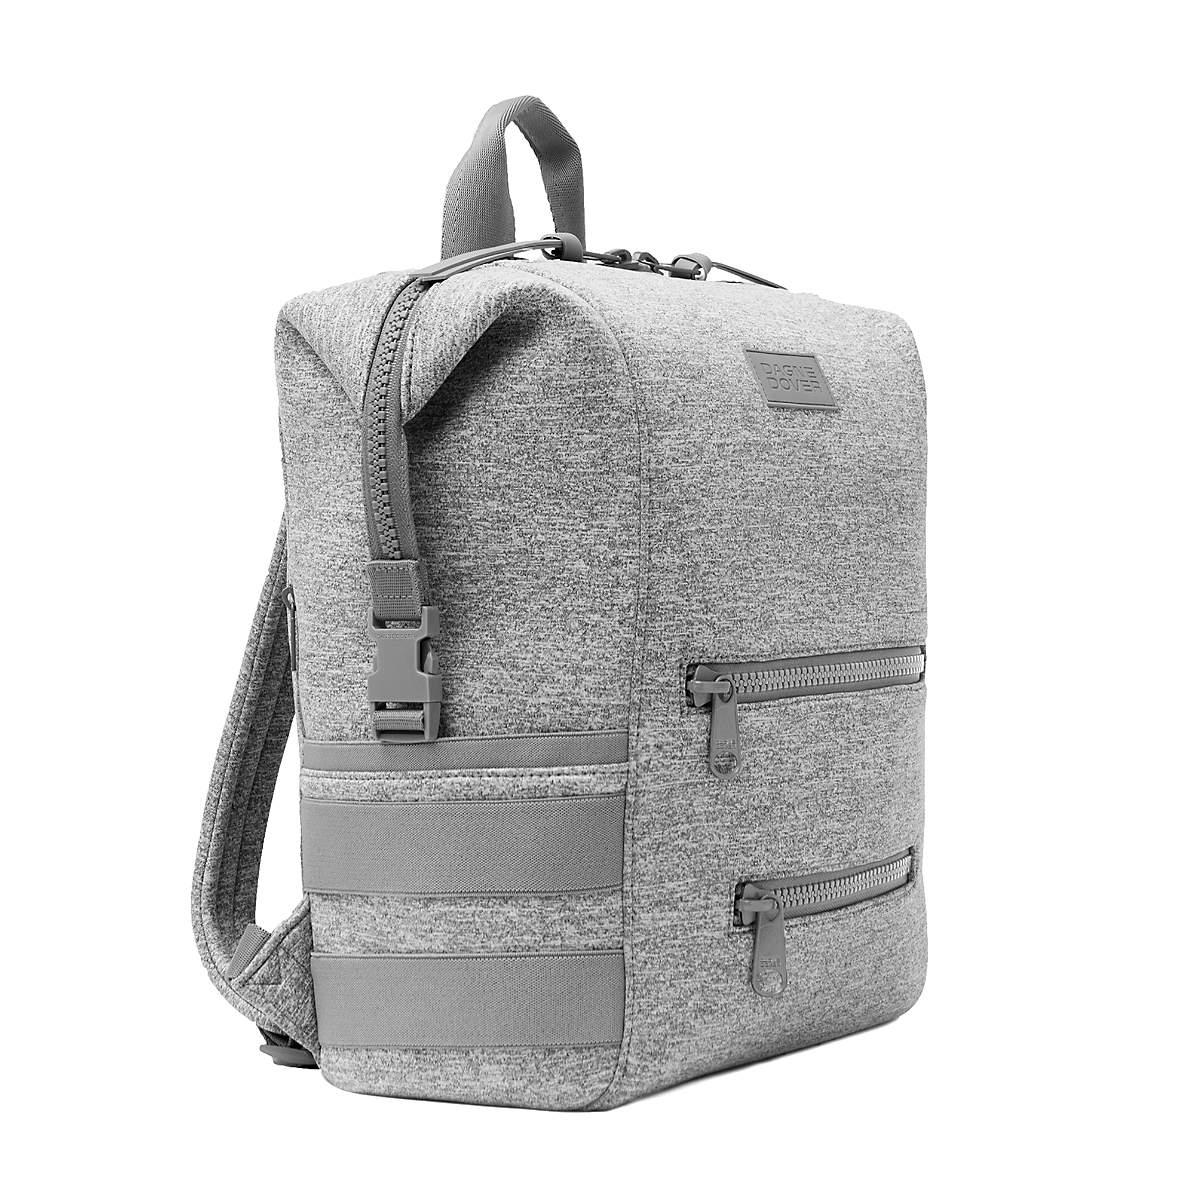 Dagne Dover Indi Camel Large Diaper Bag Backpack + Reviews